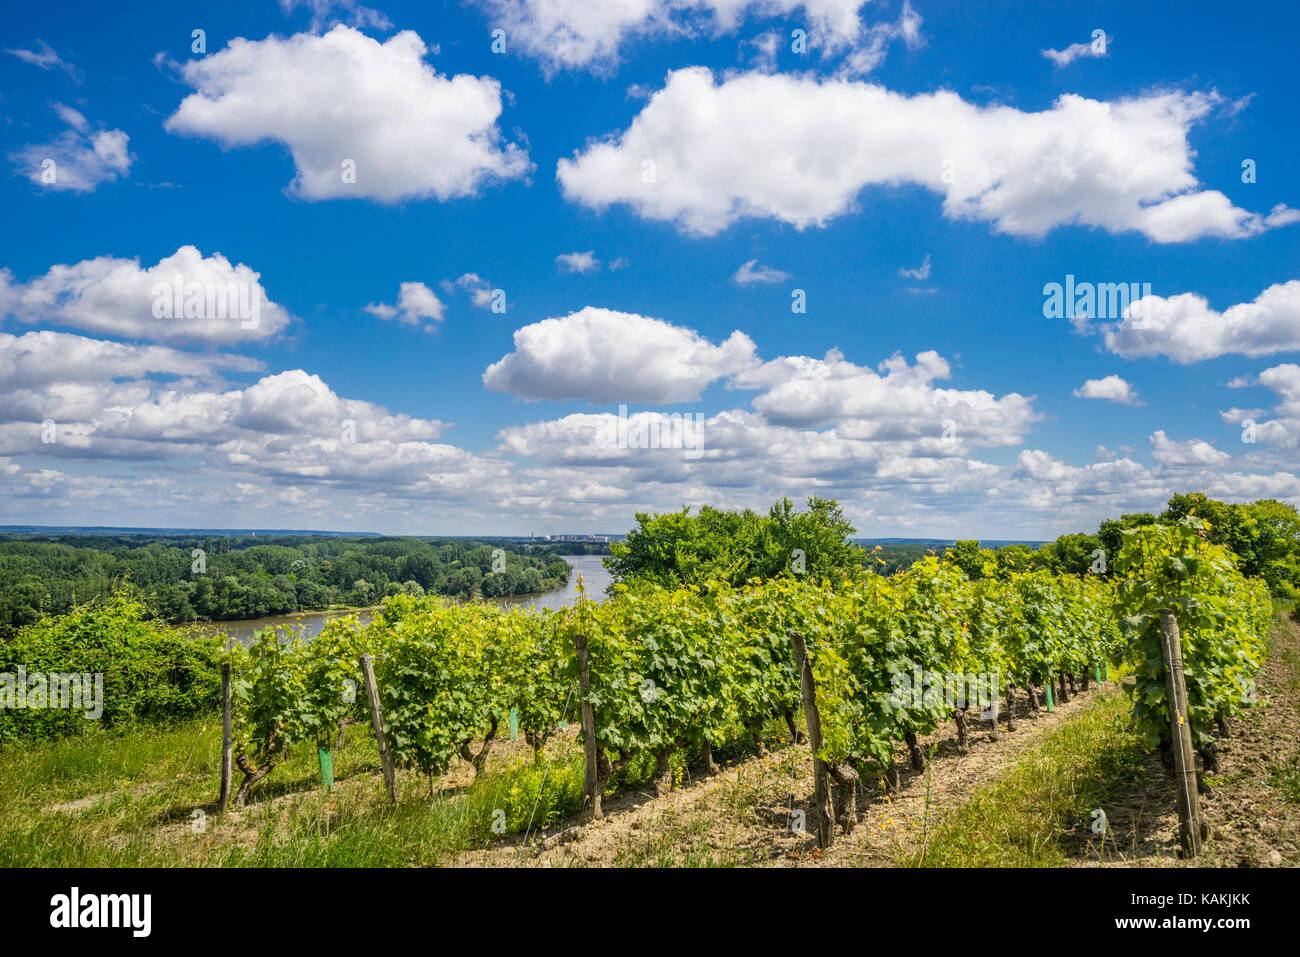 France, Pays de la Loire, Maine-et-Loire department, vinyards at Montsoreau in the Loire Valley Stock Photo